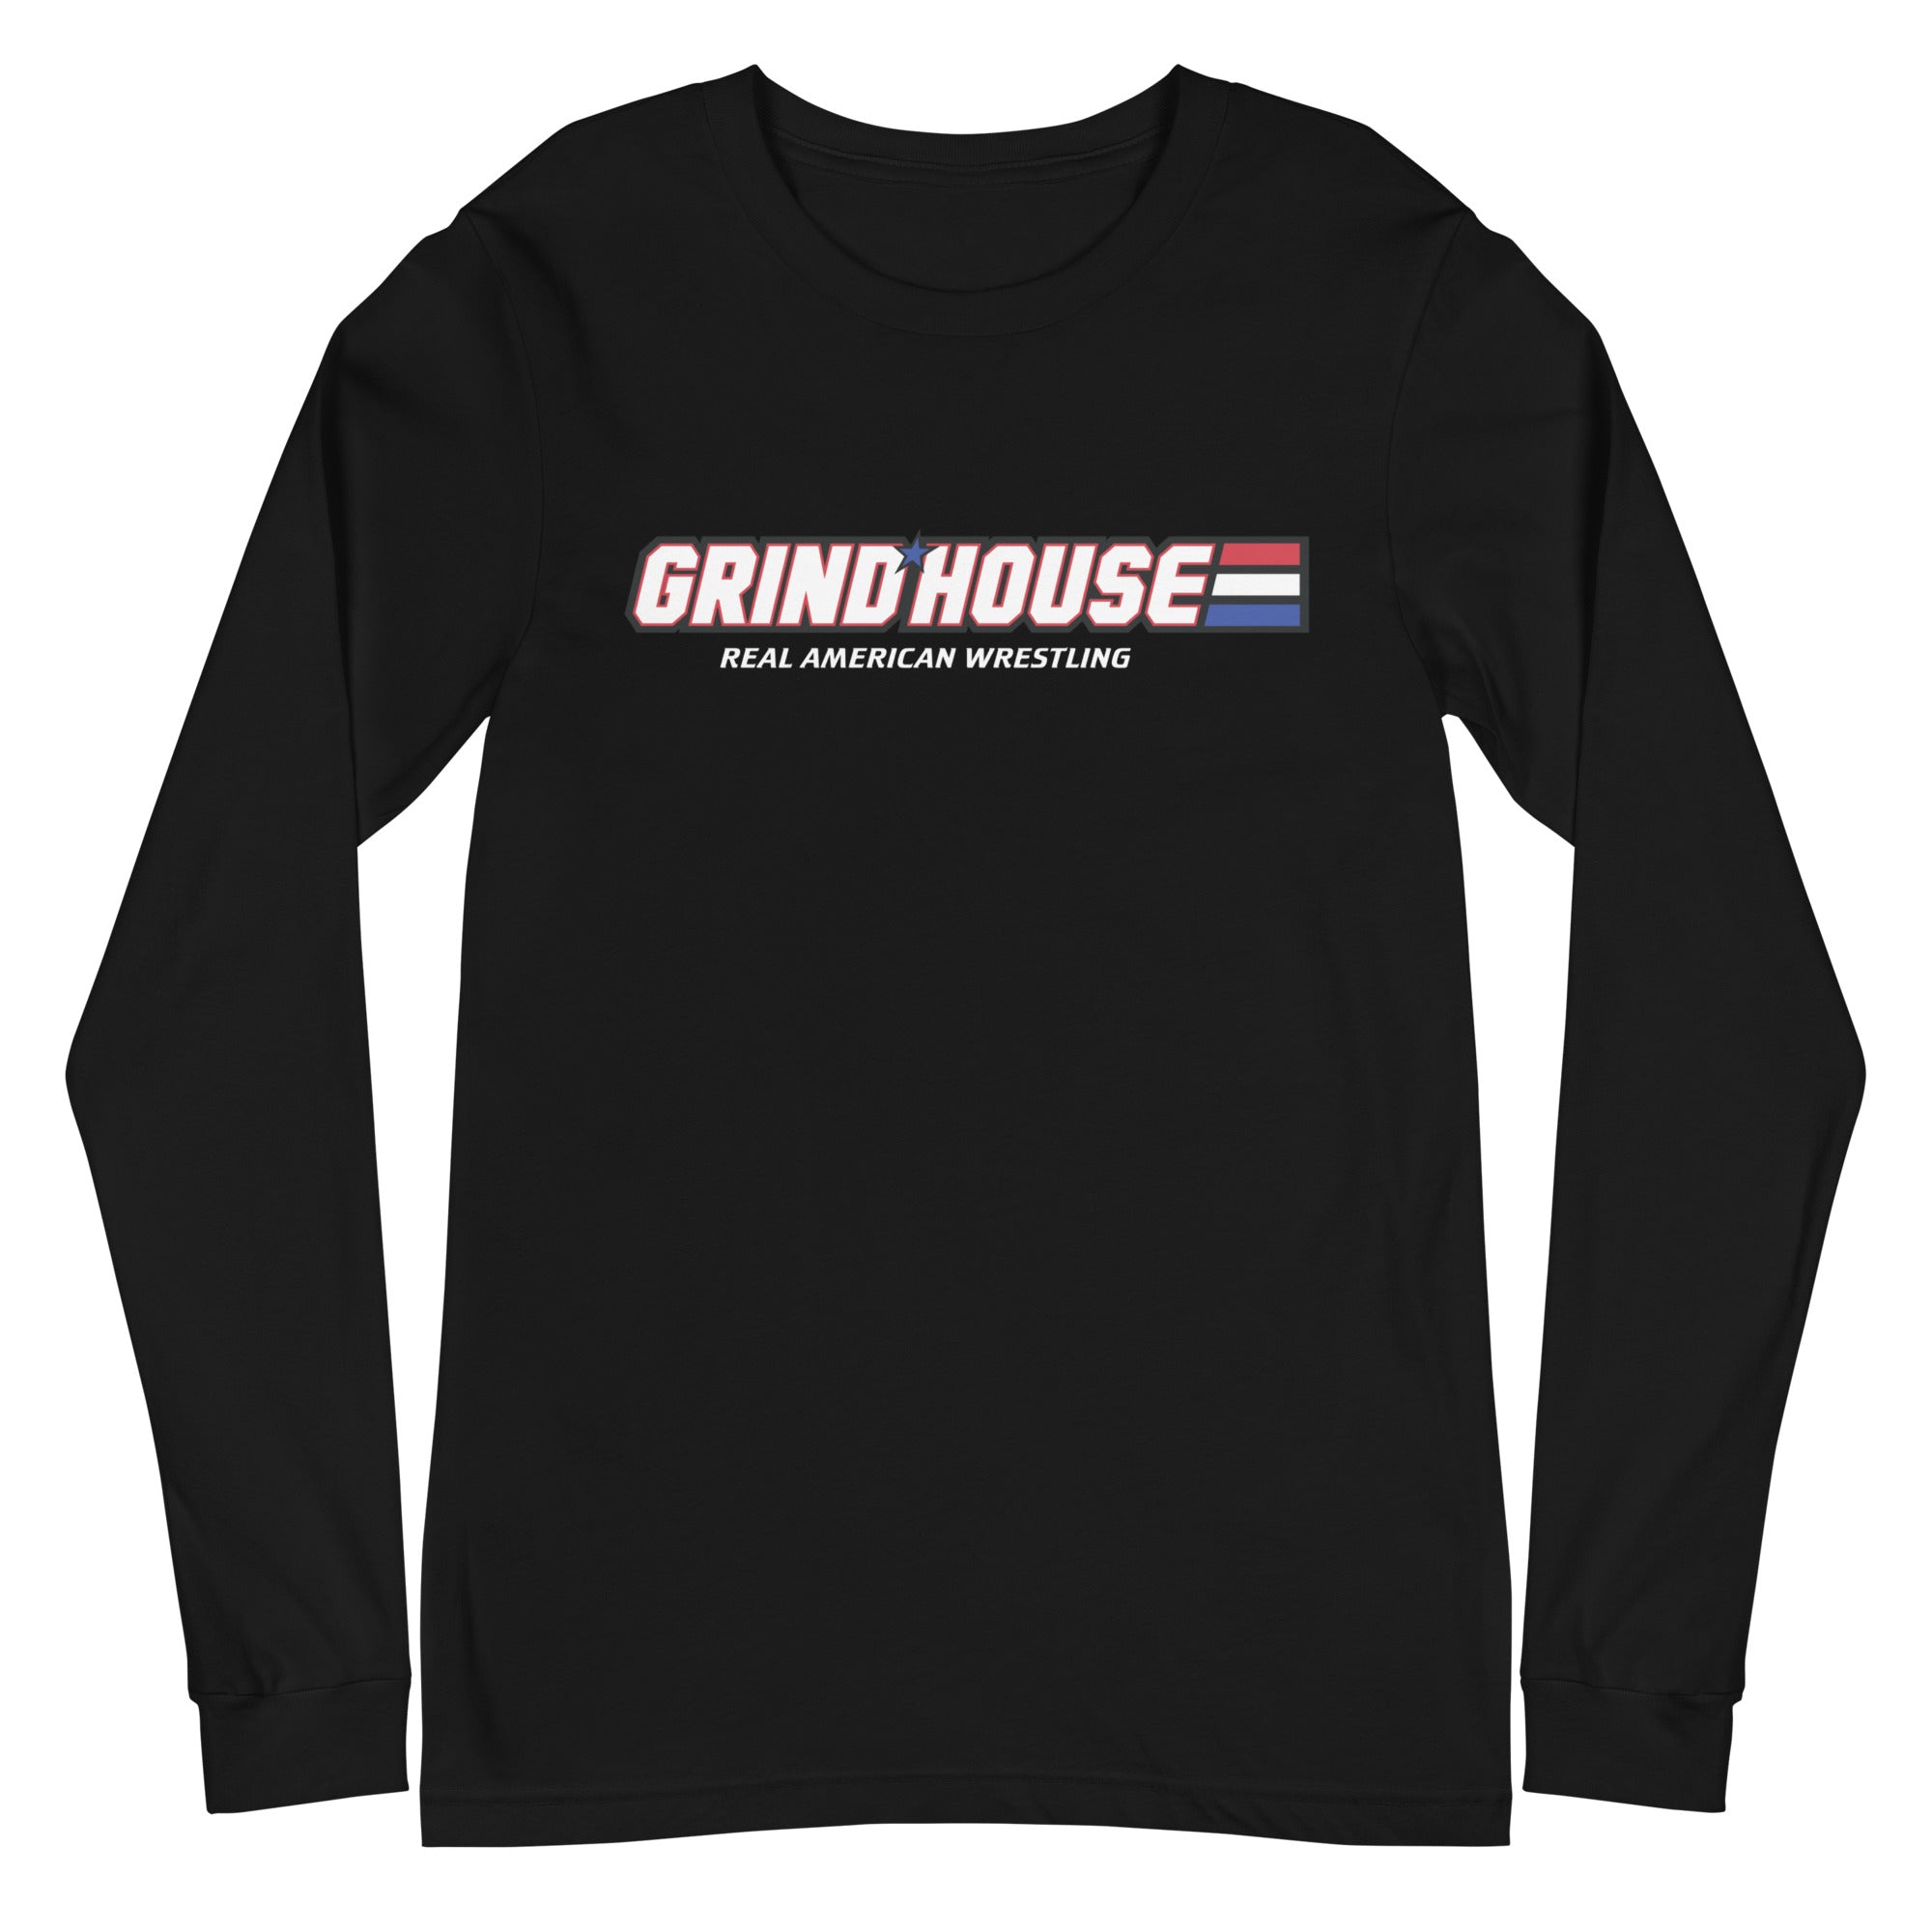 Team Grind House Real American Wrestling Unisex Long Sleeve Tee